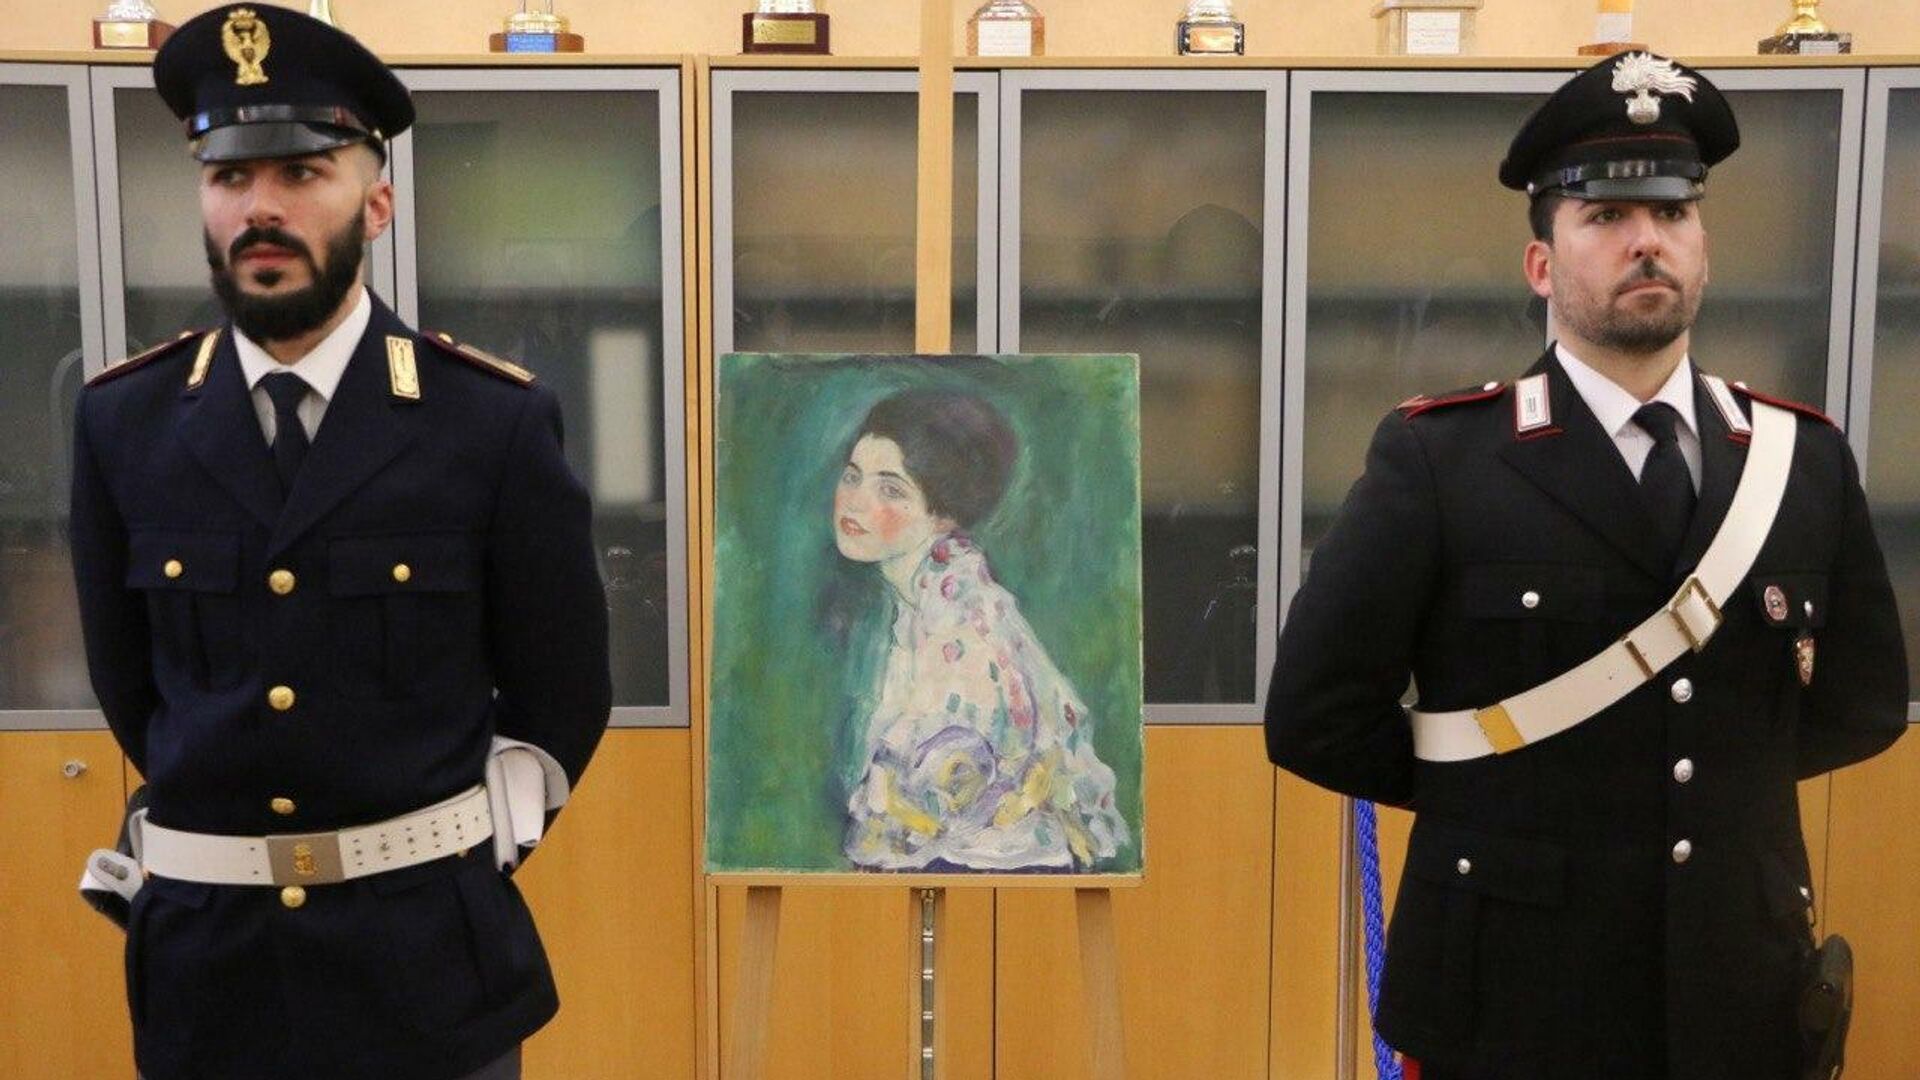 Найденная картина австрийского художника Густава Климта Портрет женщины - РИА Новости, 1920, 22.10.2020